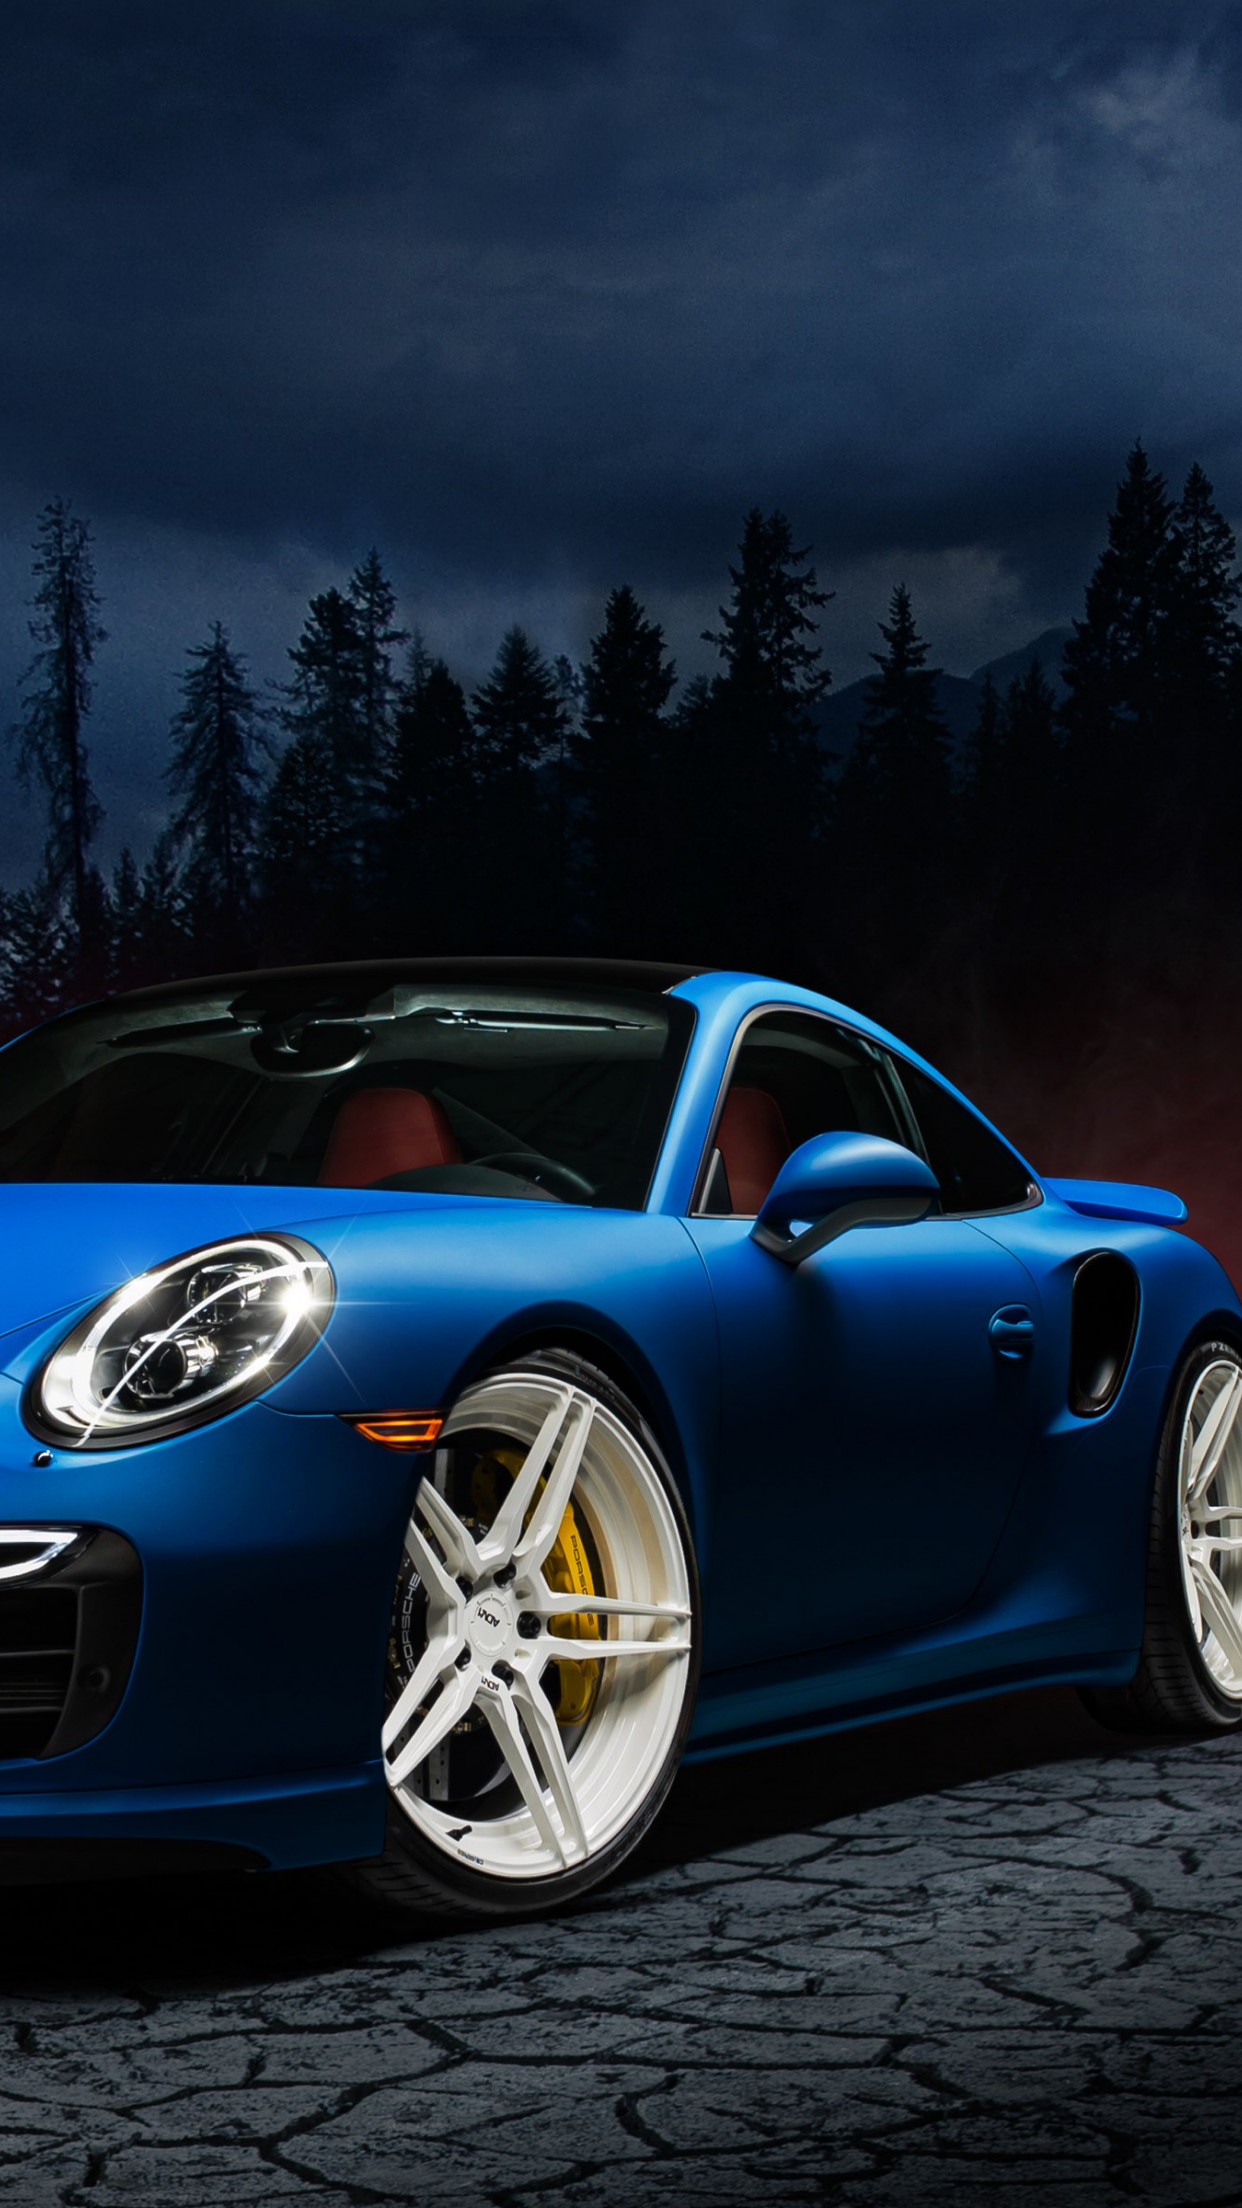 Porsche 911 blue wallpaper 1242x2208